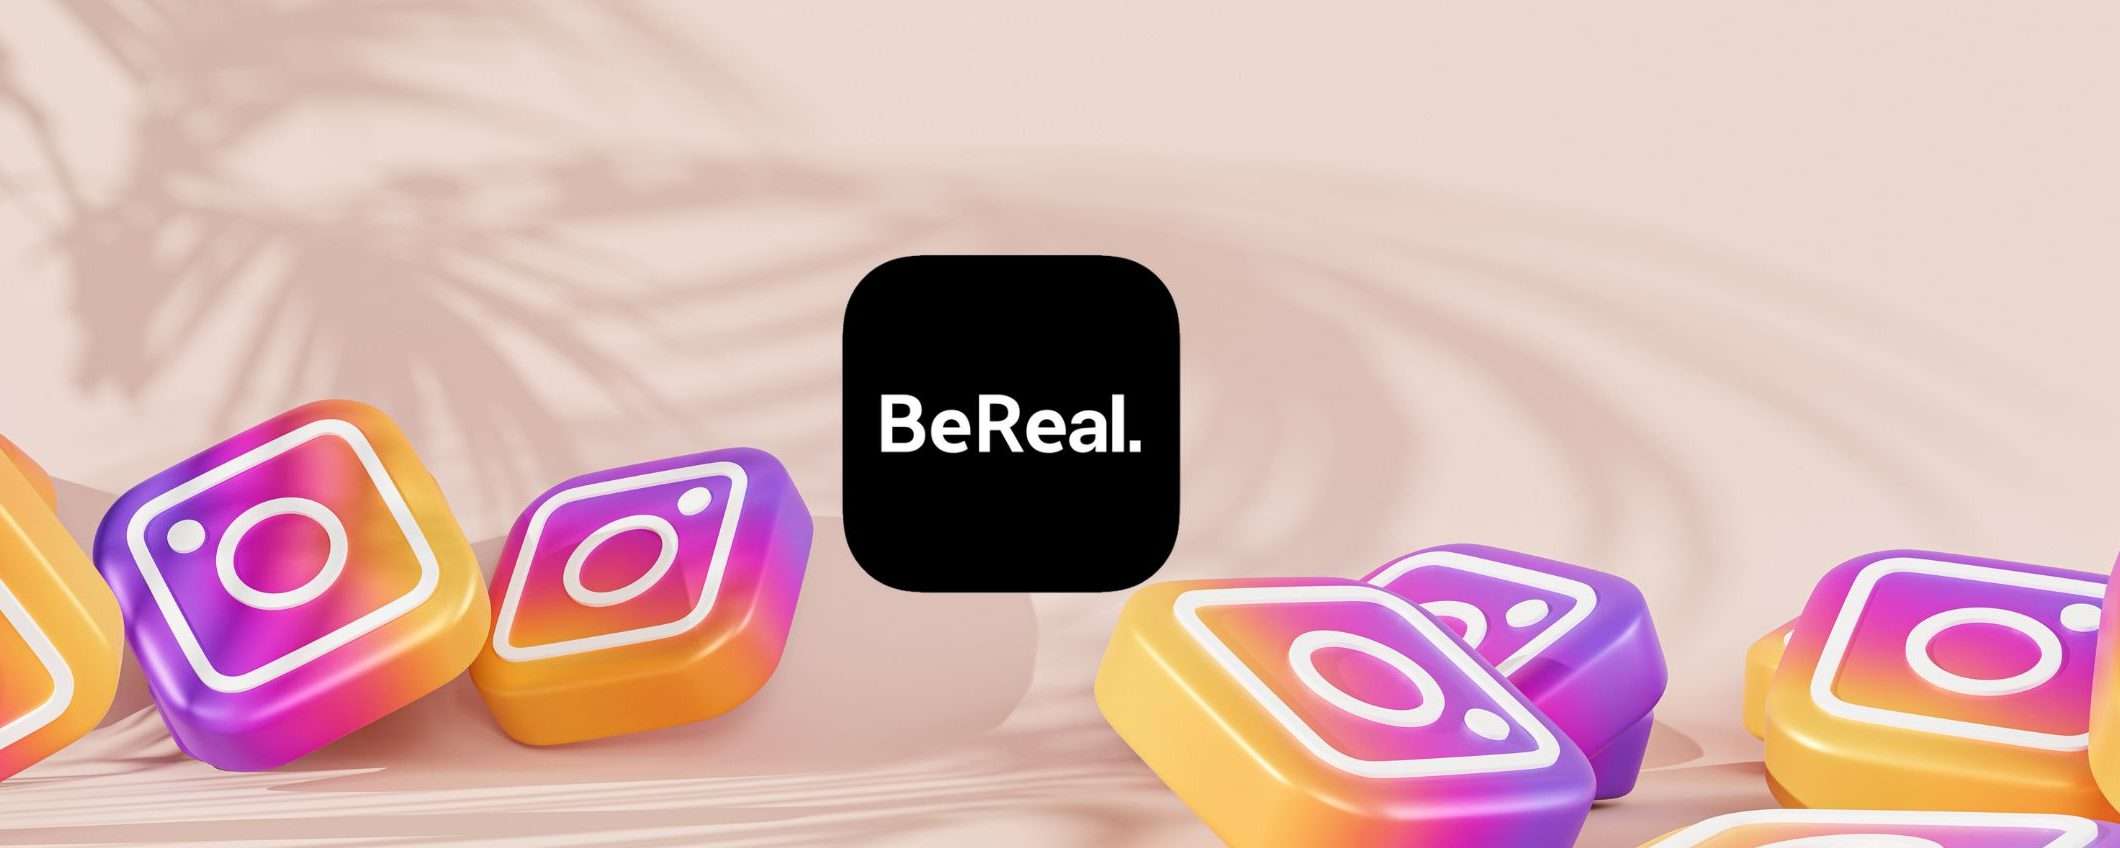 Instagram come BeReal: in studio un prototipo che sfida l'app del momento